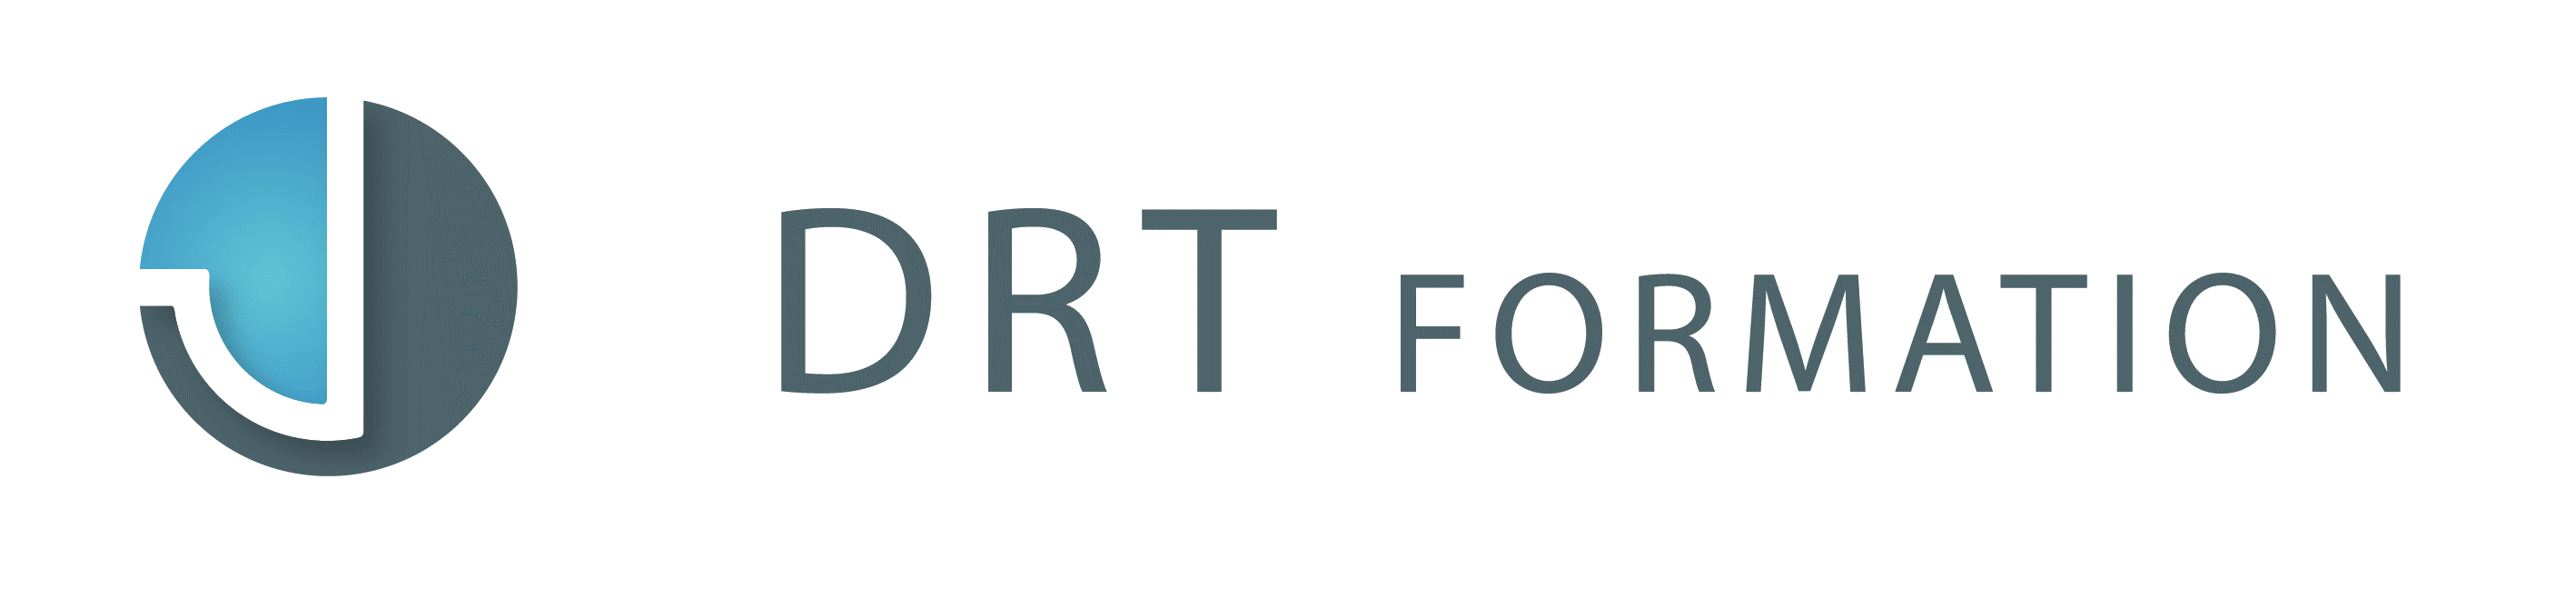 drt-logo